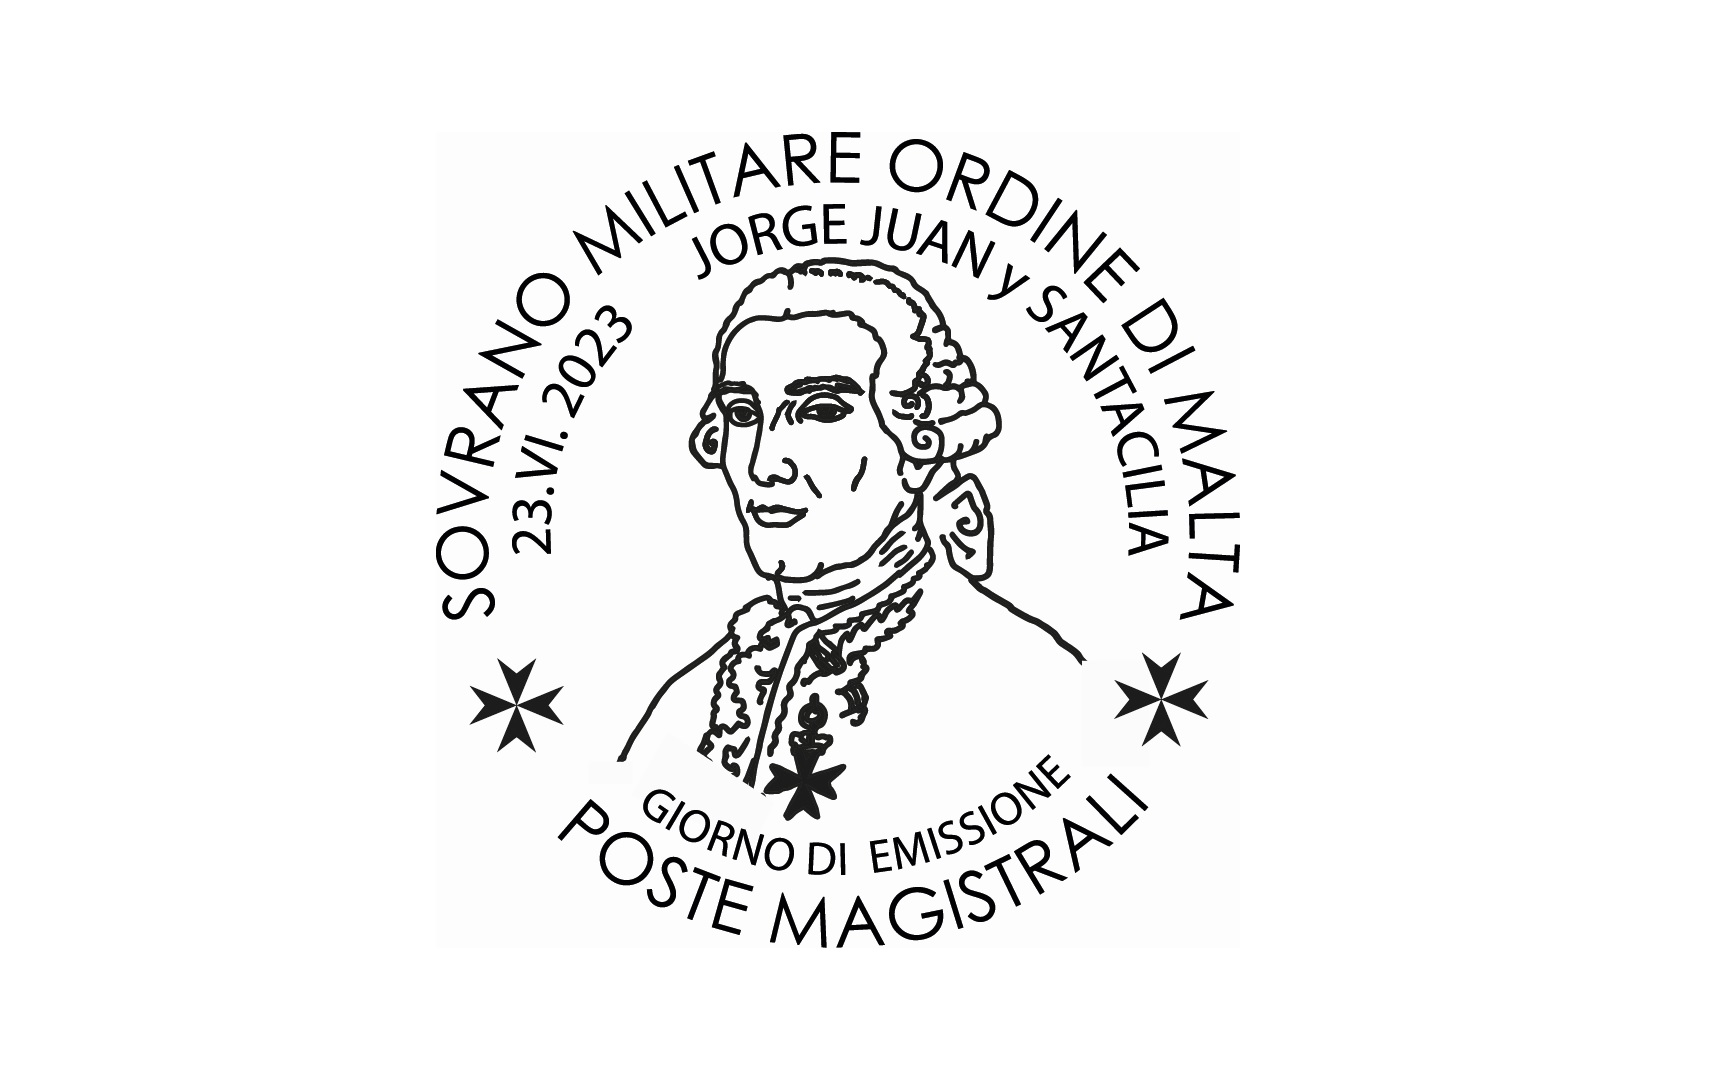 Annullo Giorno di Emissione – Jorge Juan y Santacilia, Cavaliere di Malta, nel 250° anniversario della scomparsa